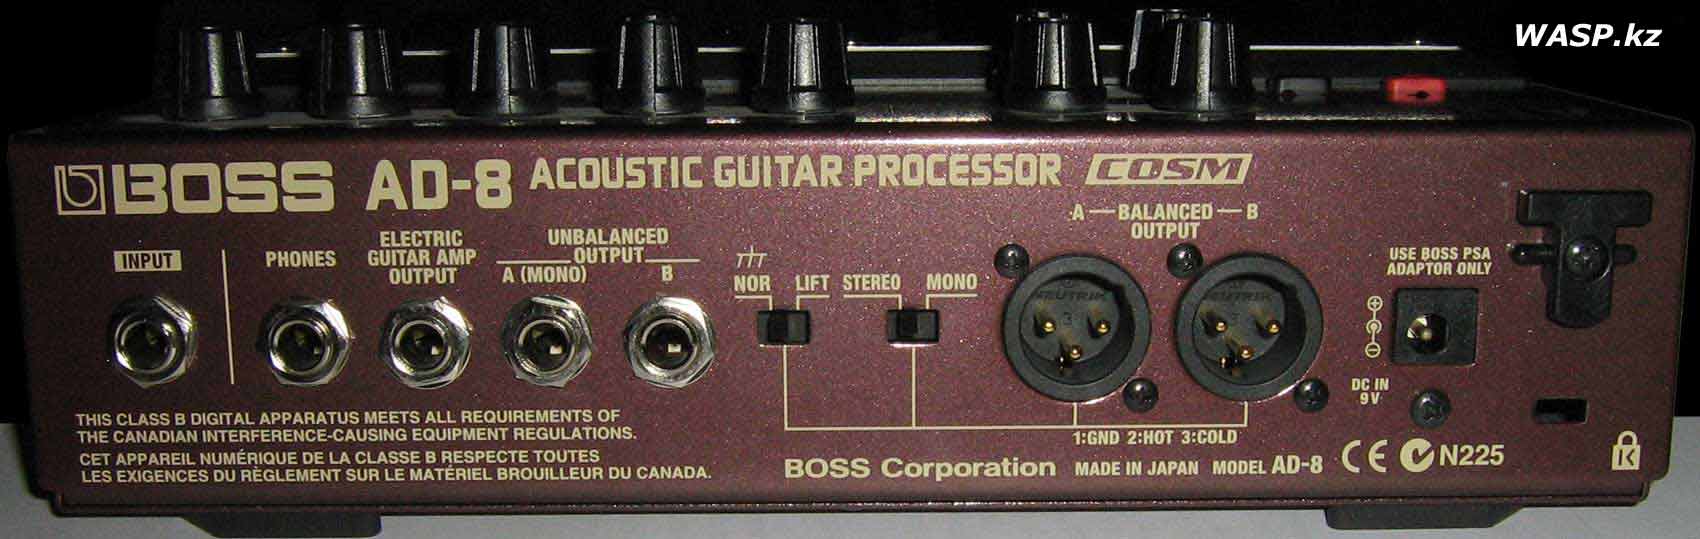 BOSS AD-8 задняя панель гитарного процессора